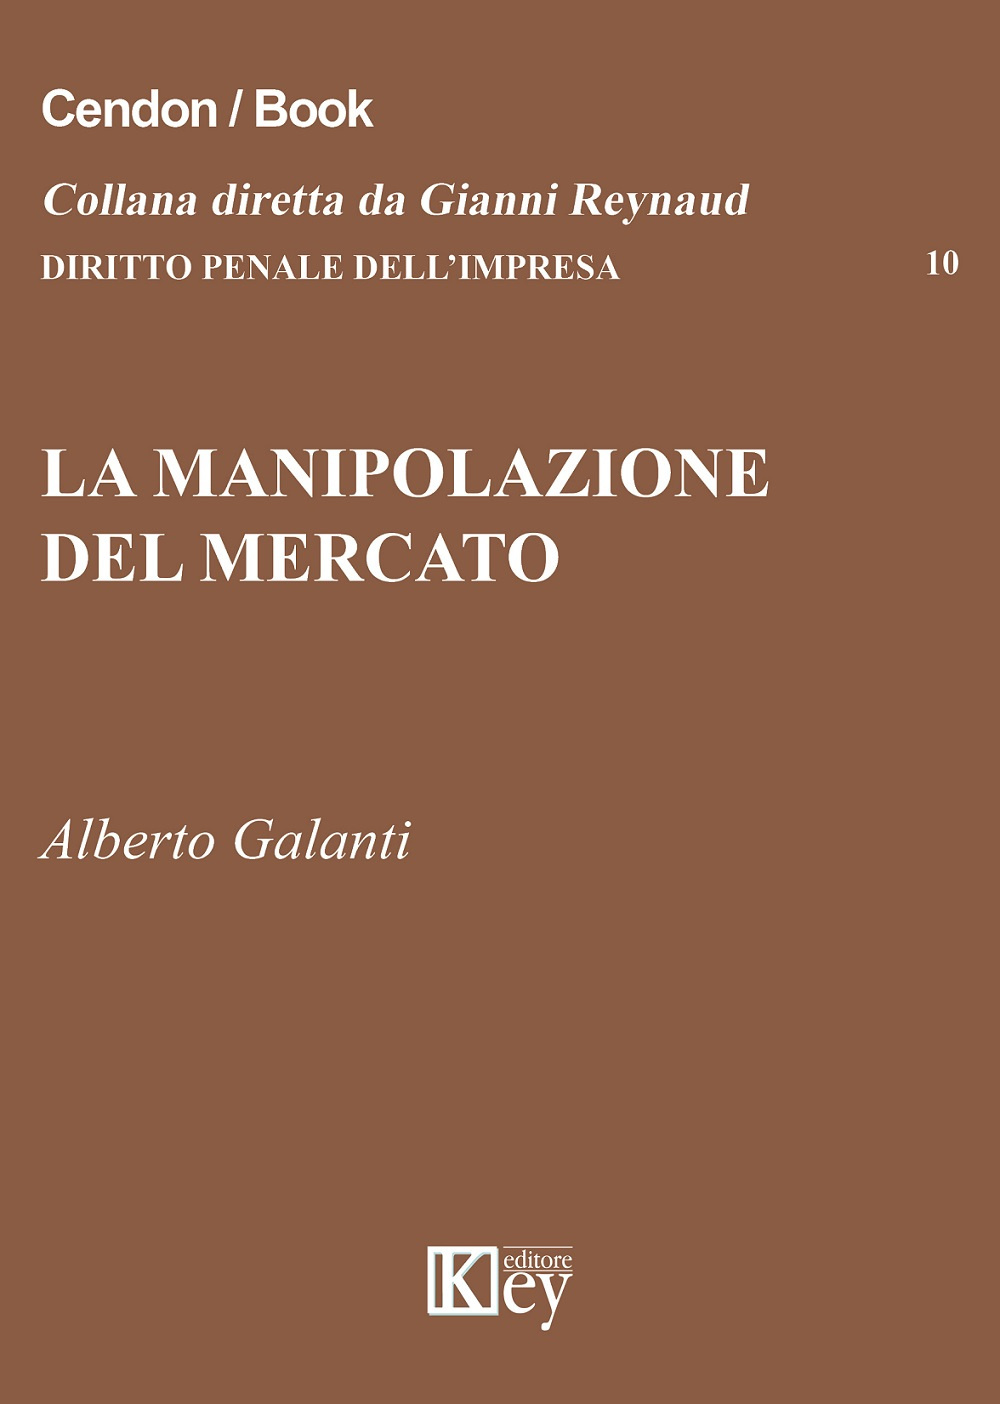 Libri Alberto Galanti - La Manipolazione Del Mercato NUOVO SIGILLATO, EDIZIONE DEL 14/10/2015 SUBITO DISPONIBILE